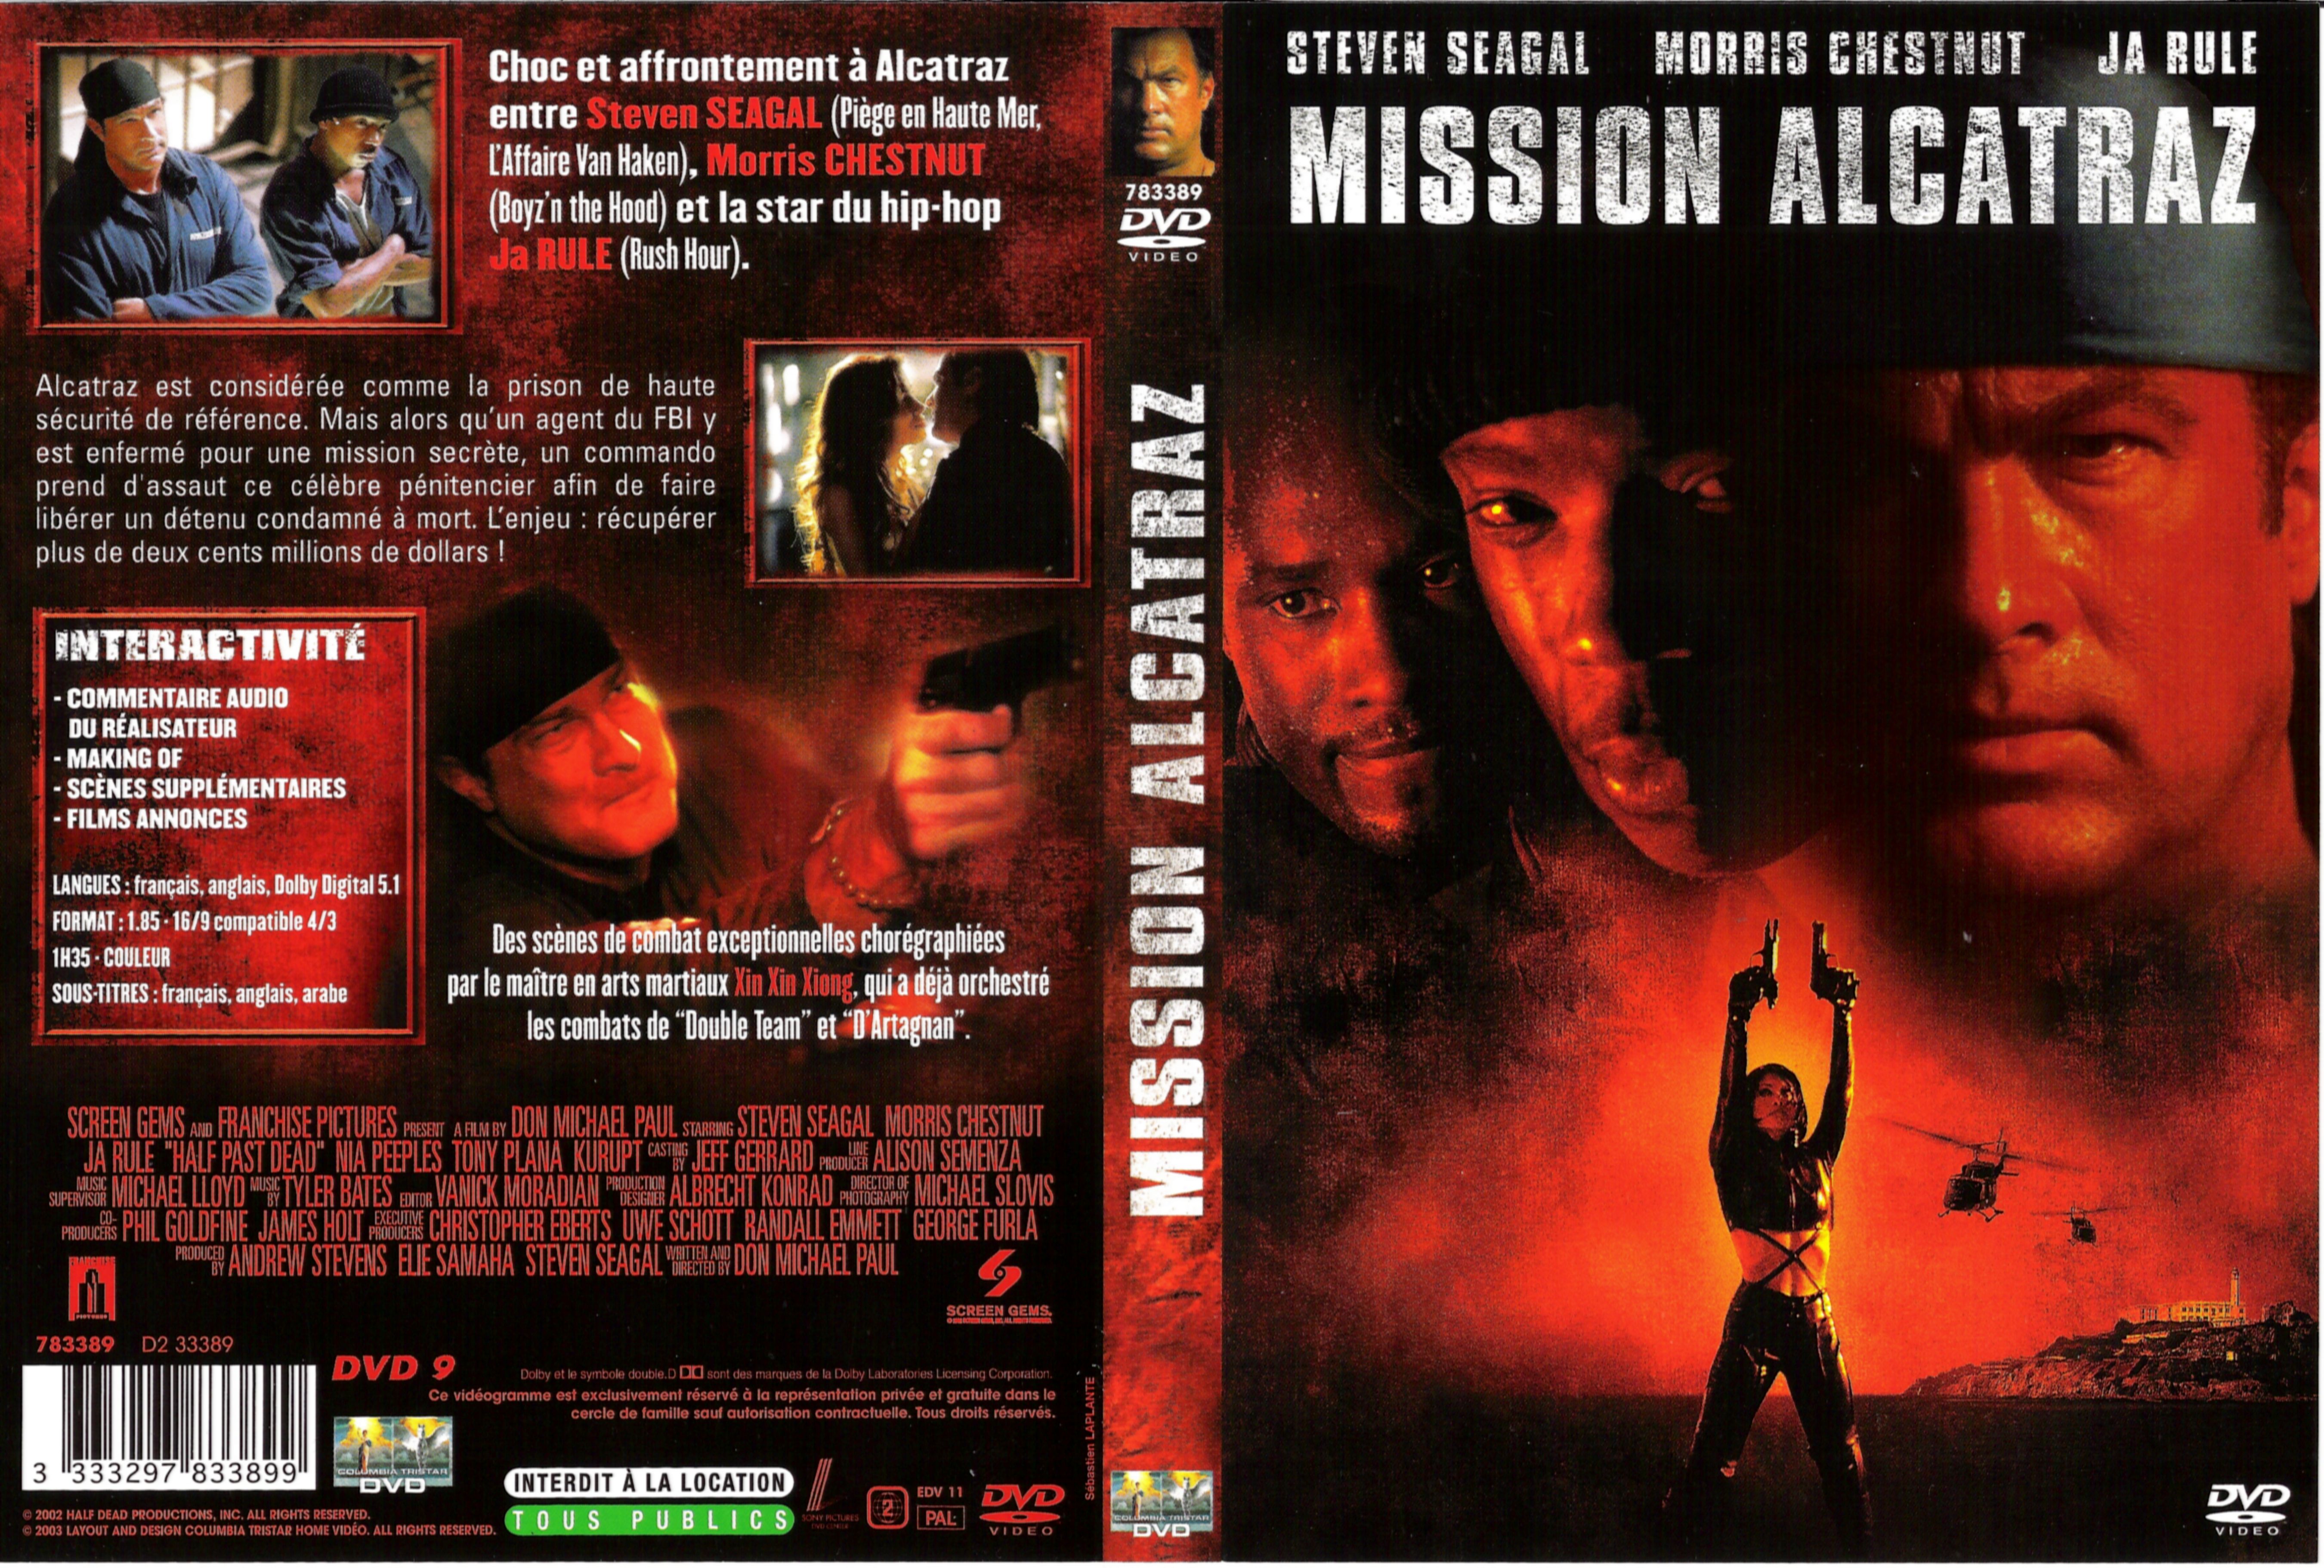 Jaquette DVD Mission Alcatraz